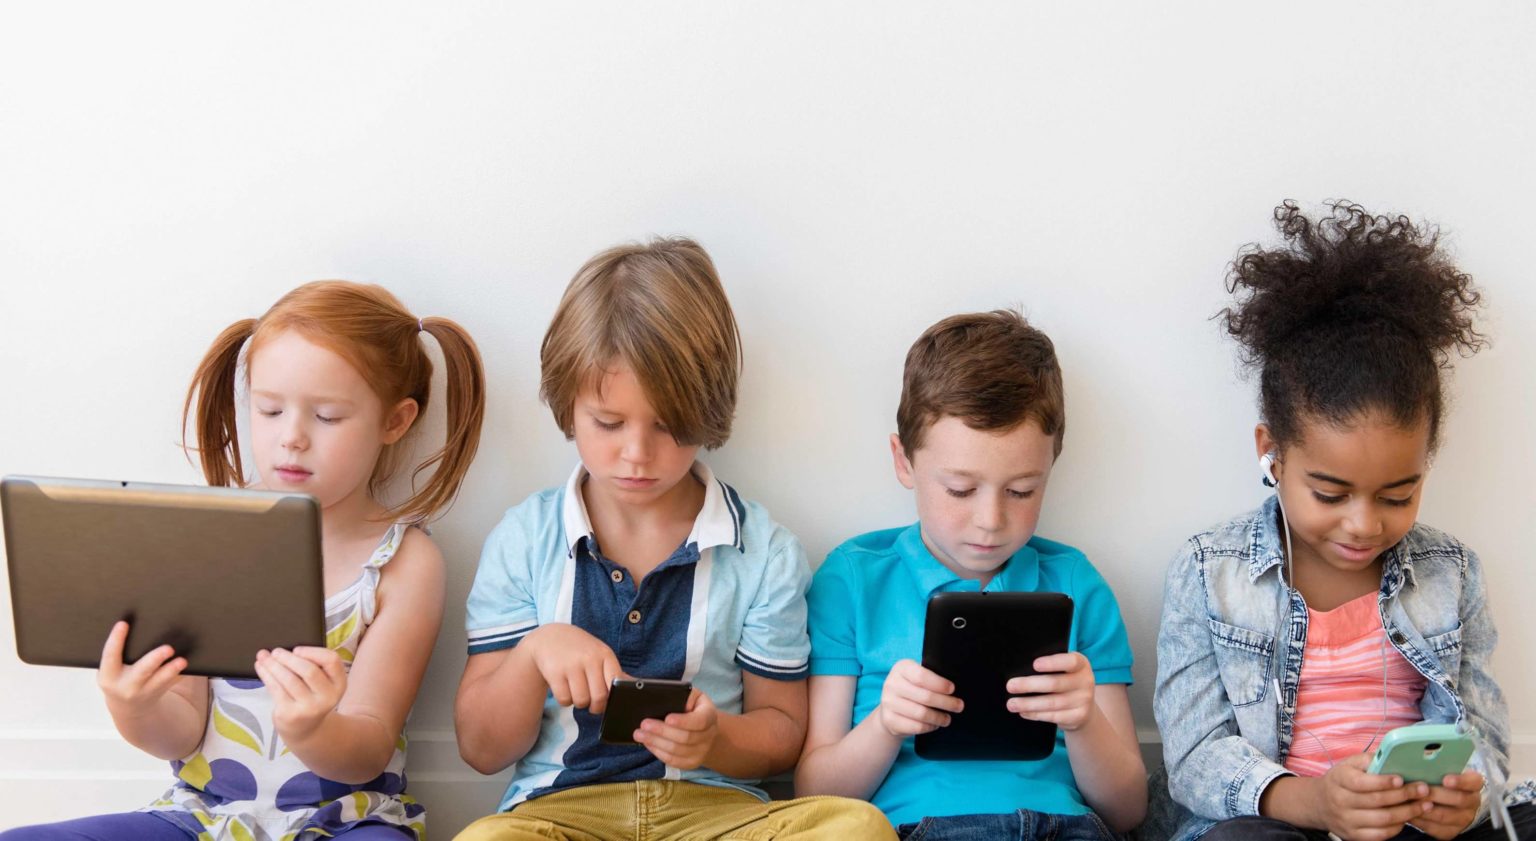 تأثير شاشات الهواتف على إدراك ومستوى ذكاء الأطفال